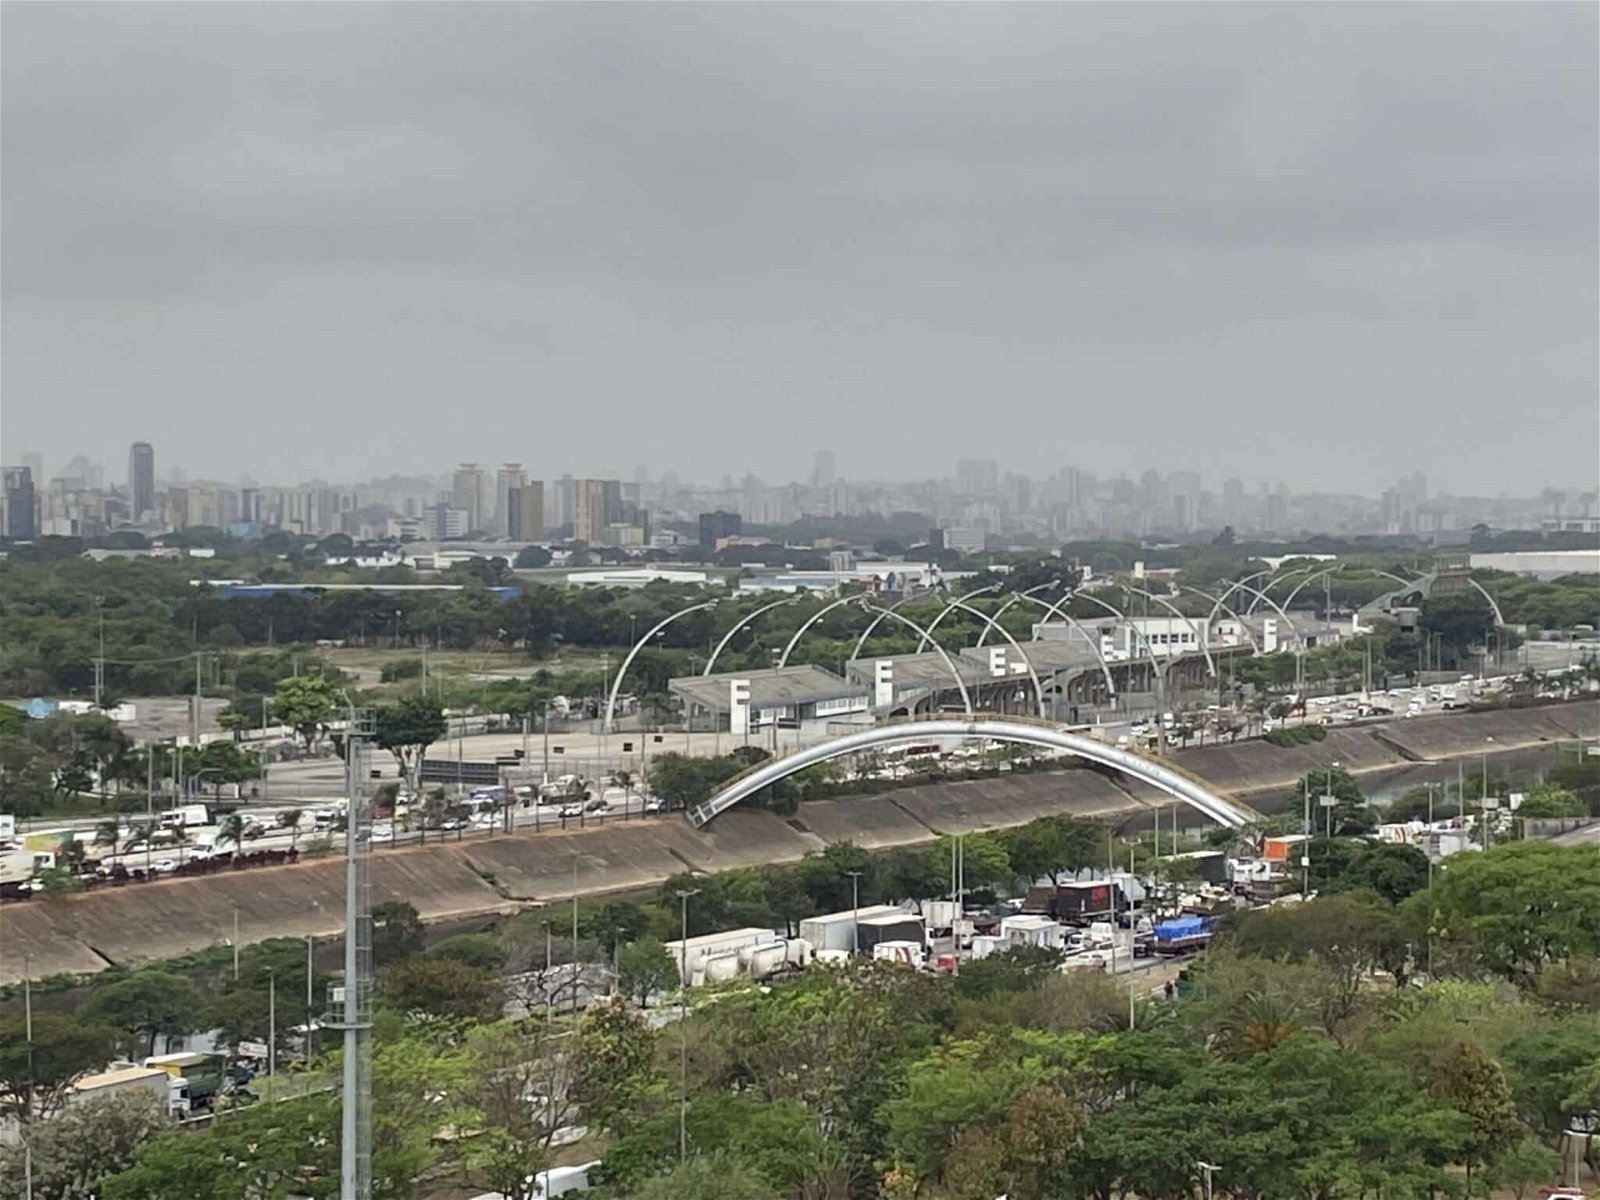 Imagem panorâmica mostra trecho da marginal tiete, em São Paulo, com ceu encoberto por nuvens. É possível ver arcos do sambodromo do anhembi e trânsito congestionado.